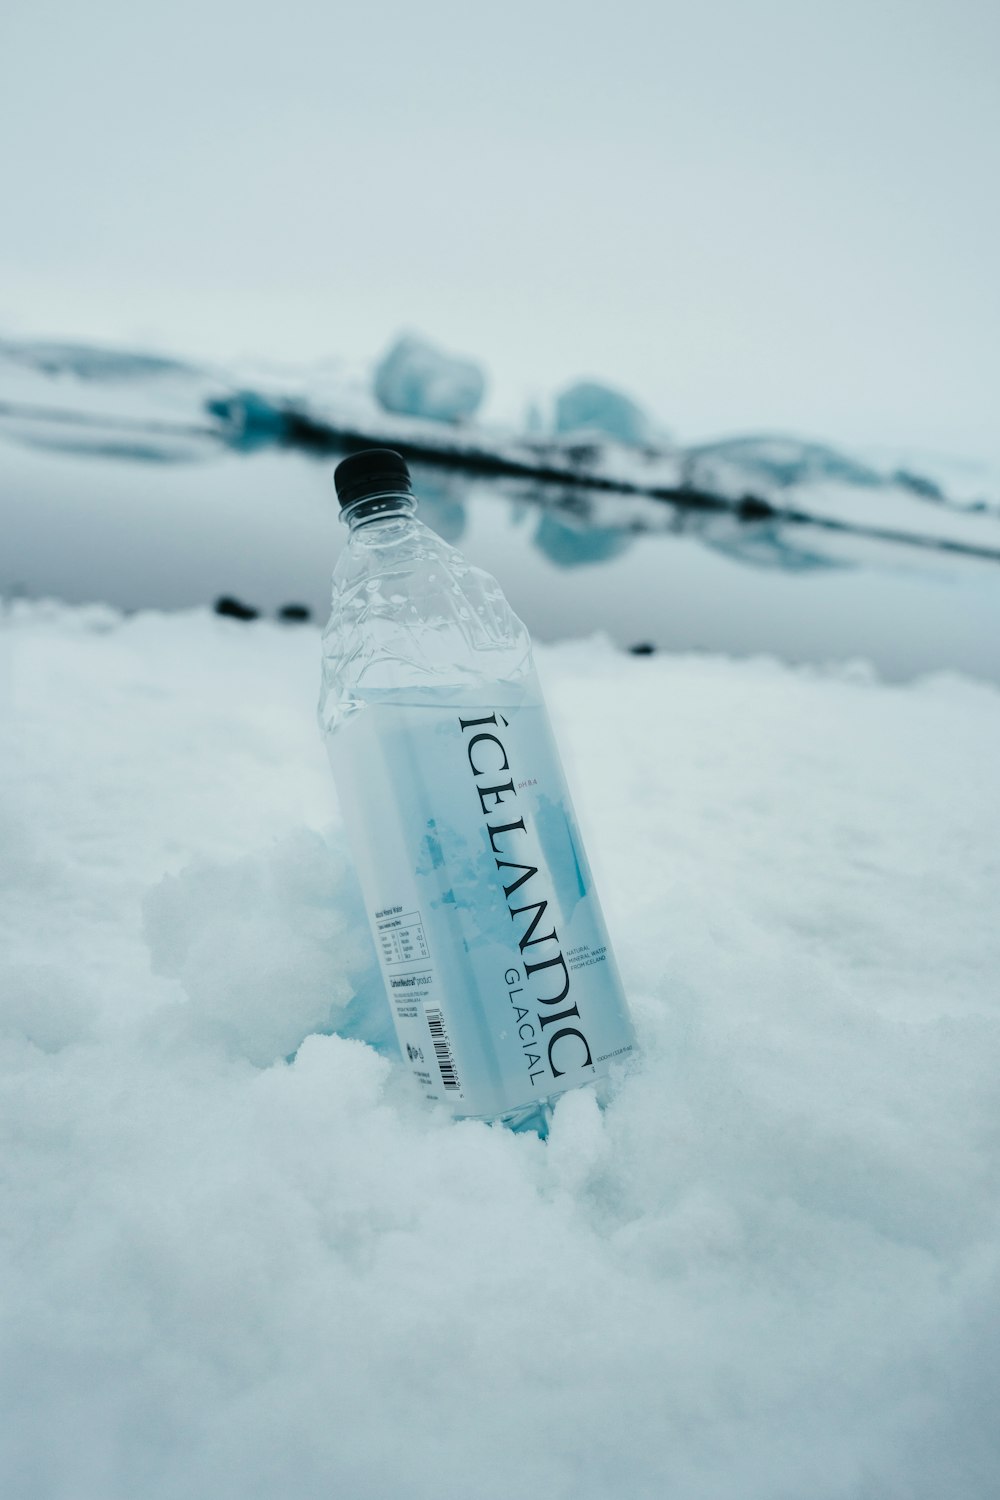 garrafa de vidro transparente no chão coberto de neve